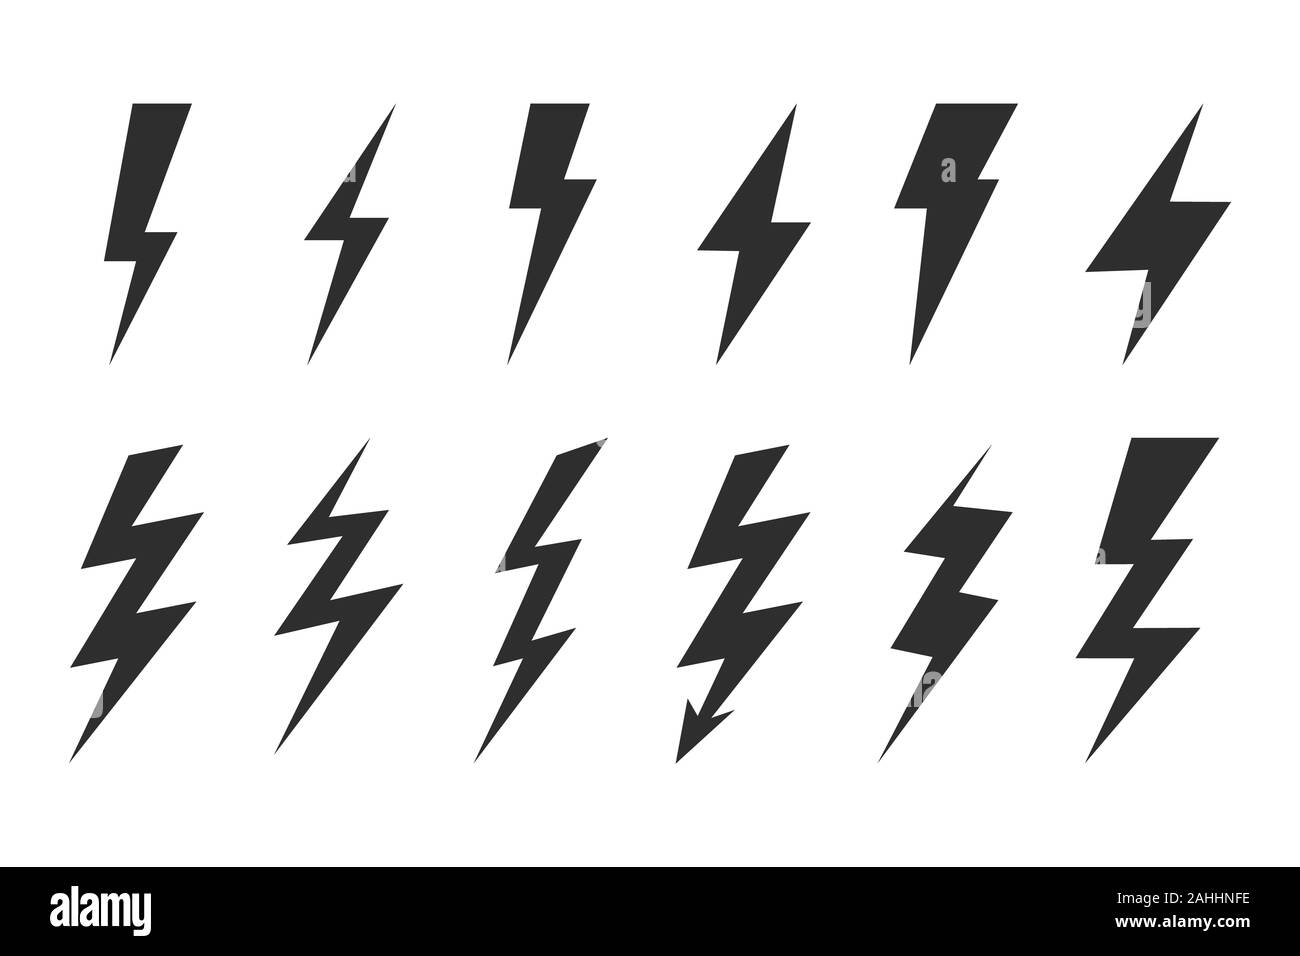 Thunder and bolt lighting elements. Flash icons set. Elestric blitz. thunderbolt on white background Stock Photo